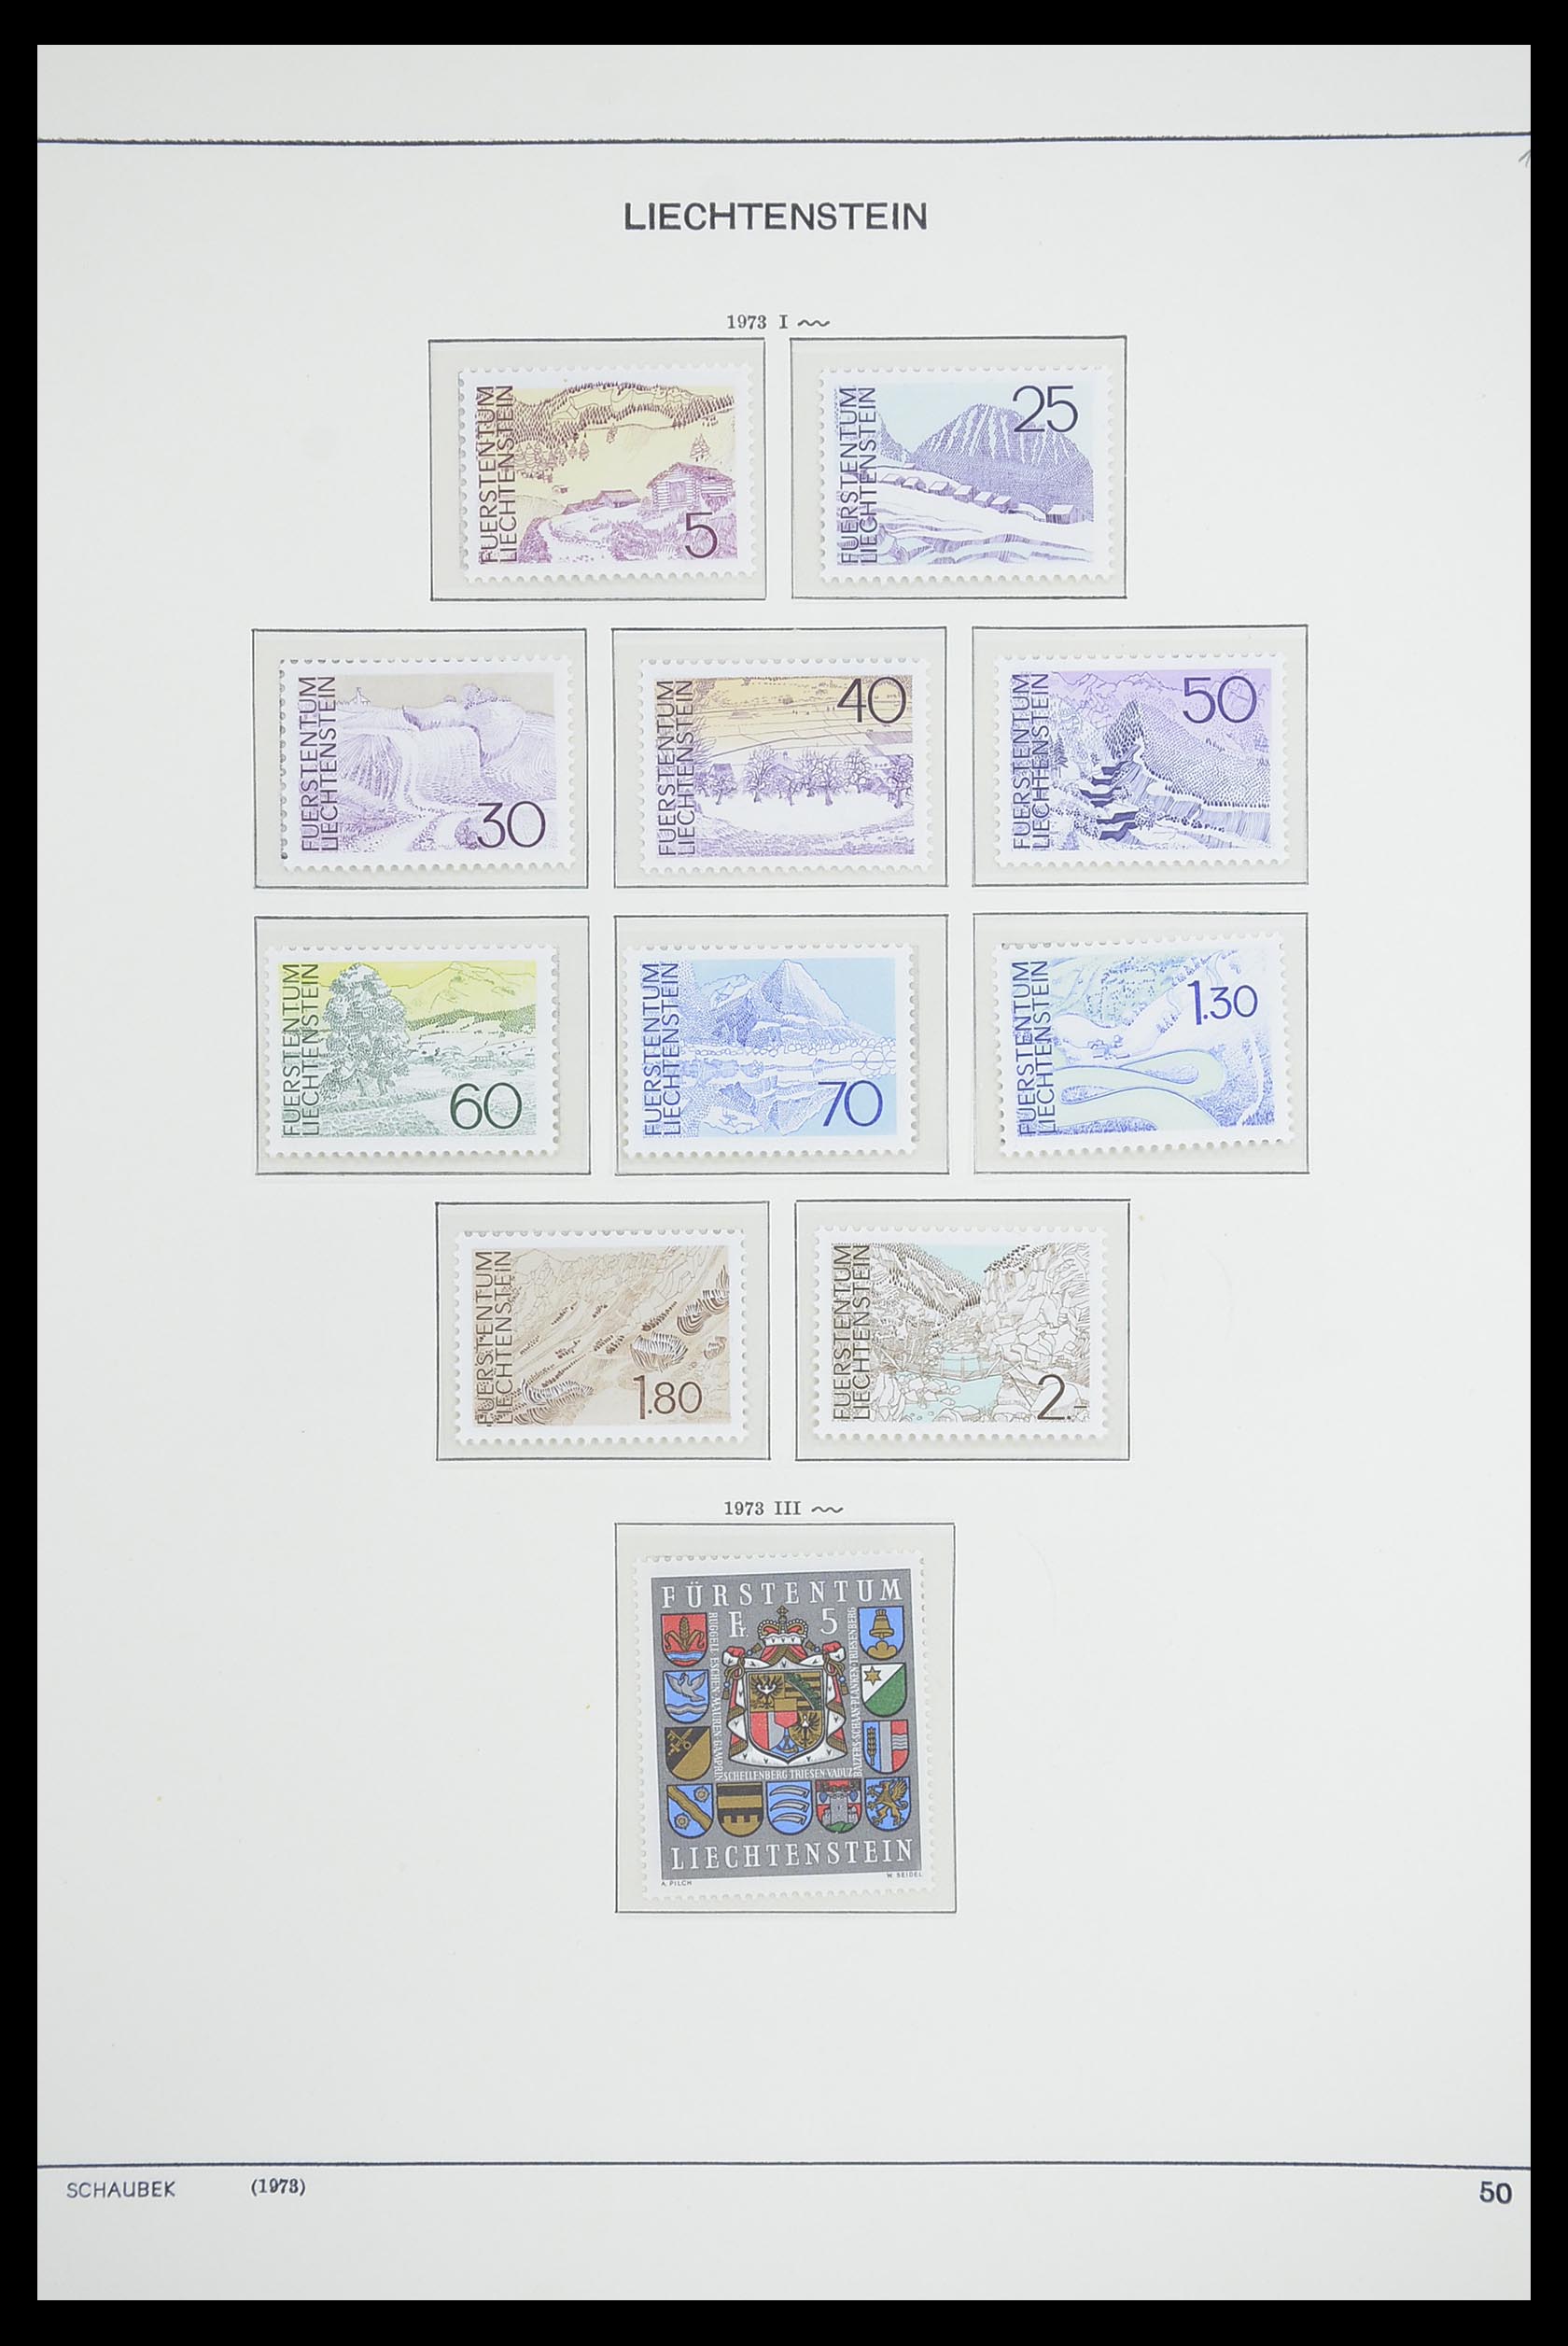 33274 059 - Stamp collection 33274 Liechtenstein 1912-1996.